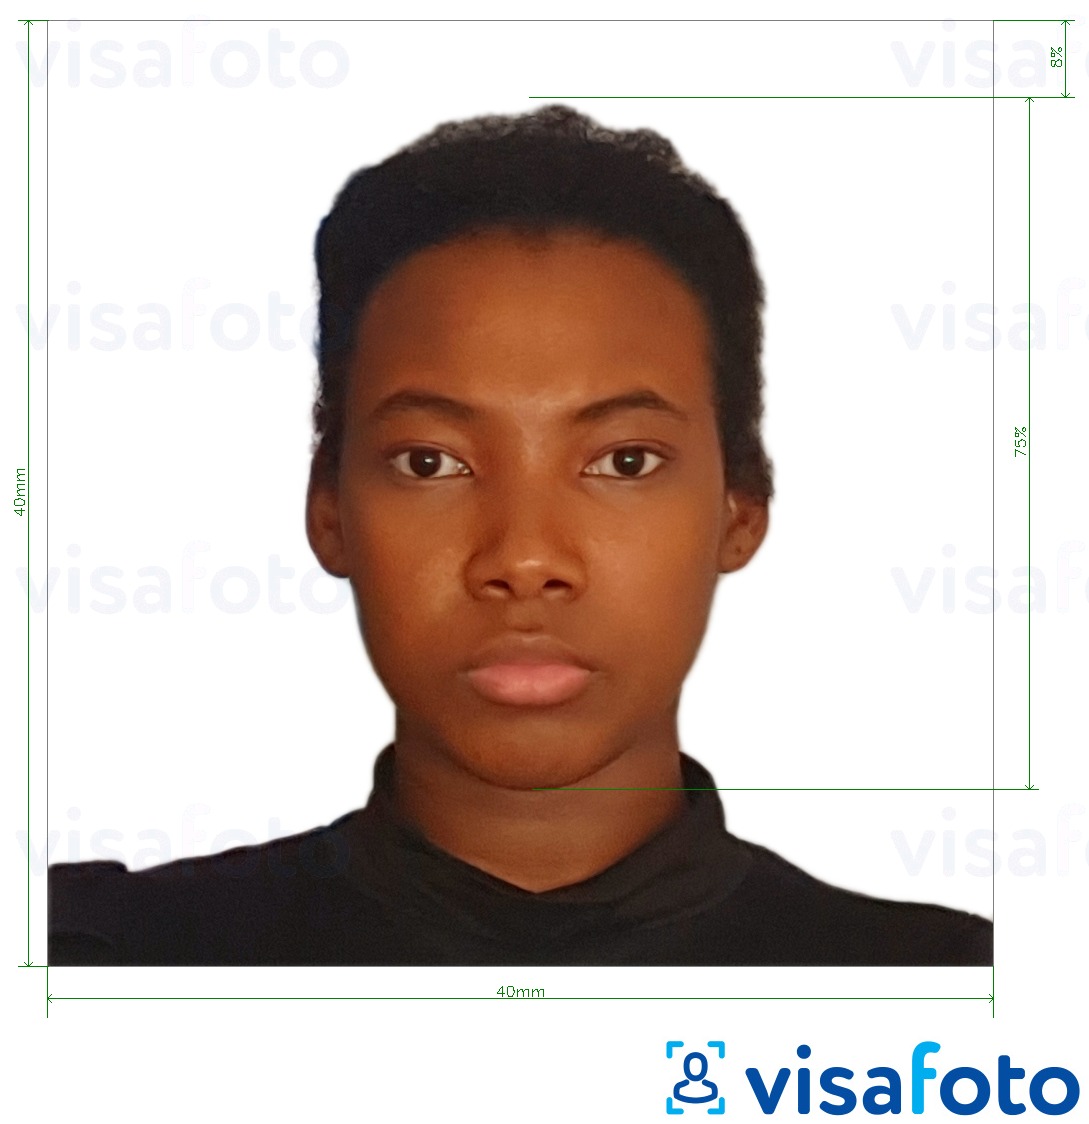 Fotobeispiel für Kamerun Visum 4x4 cm (40x40 mm) mit genauer größenangabe